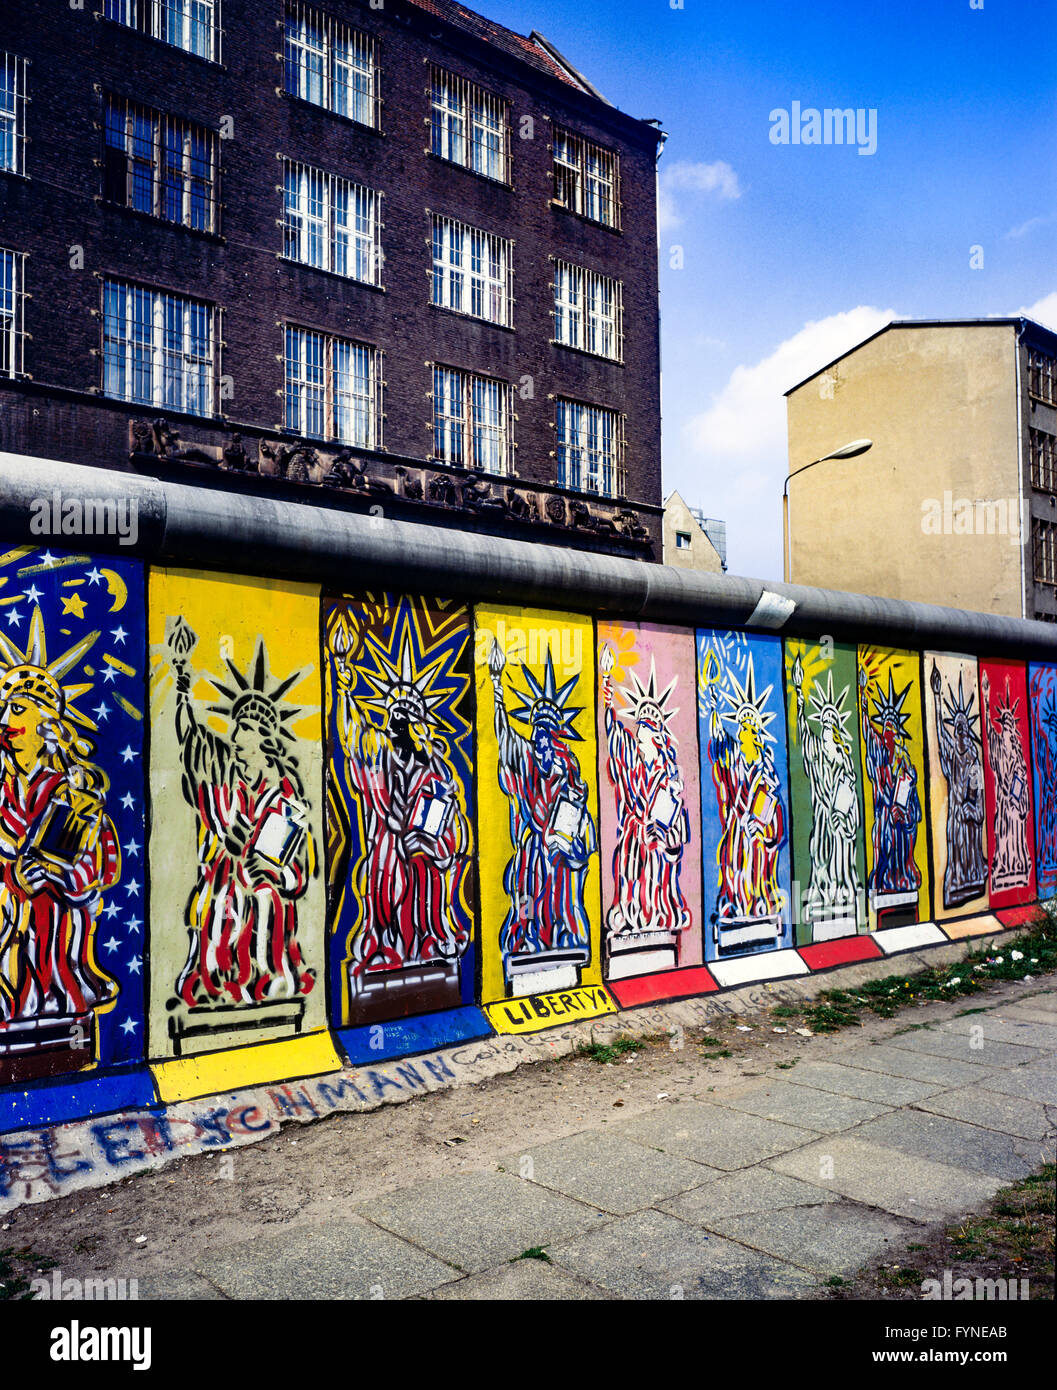 August 1986, Berlin Wall, Statue of Liberty frescos, western side, East Berlin buildings, Zimmerstrasse street, West Berlin side, Germany, Europe, Stock Photo